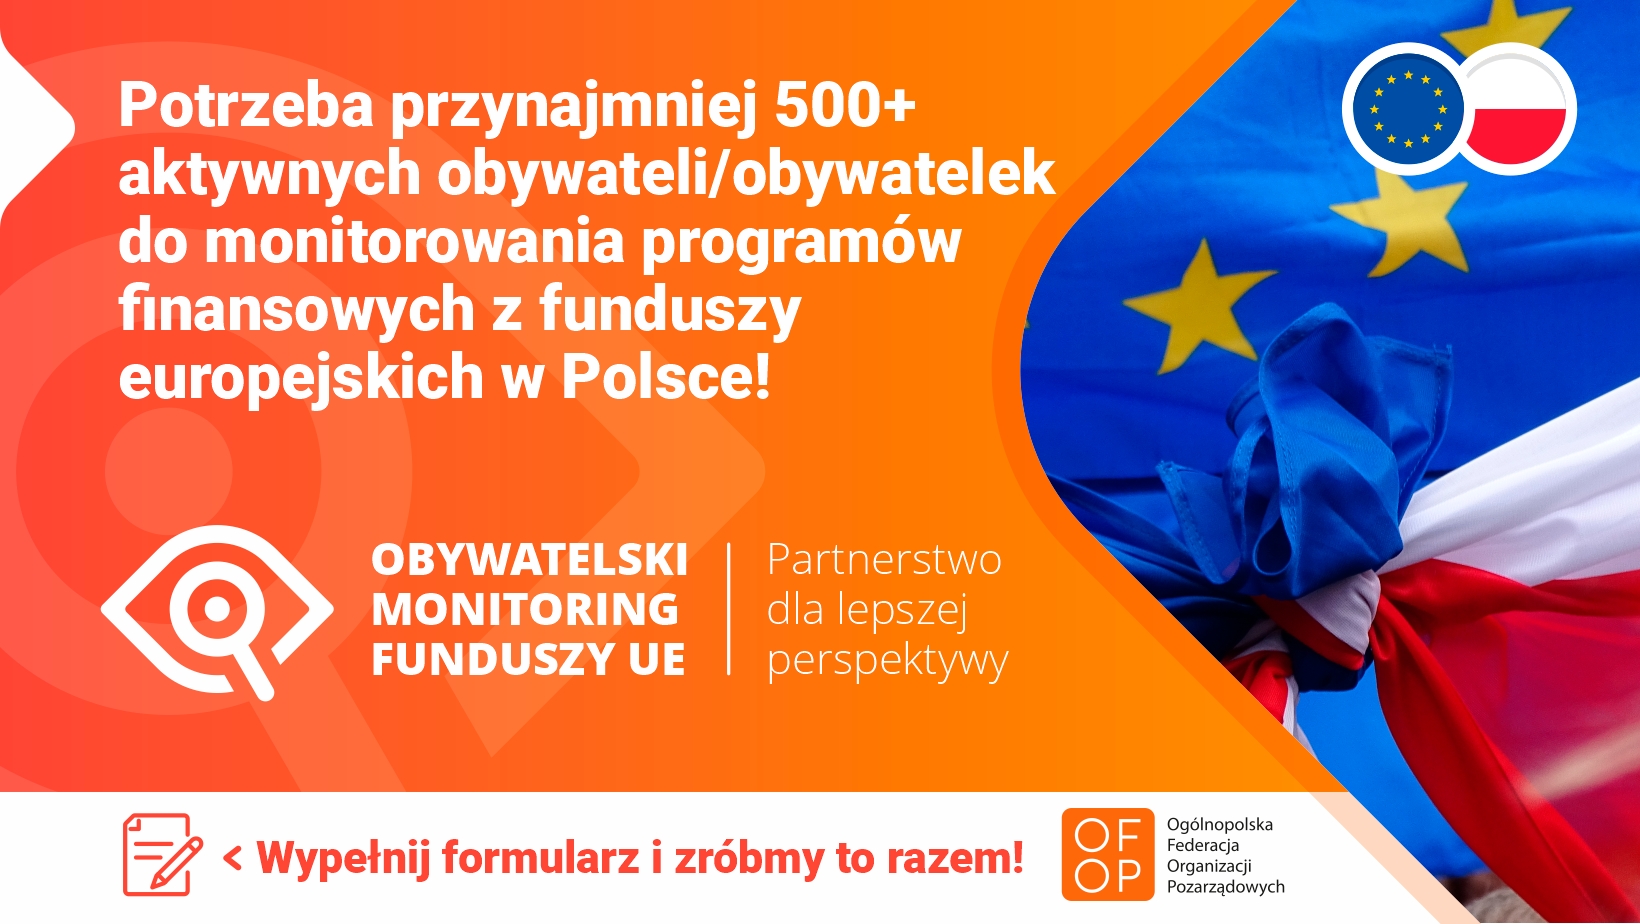 Potrzeba ponad 500 obywateli i obywatelek do monitorowania programów finansowanych z funduszy europejskich